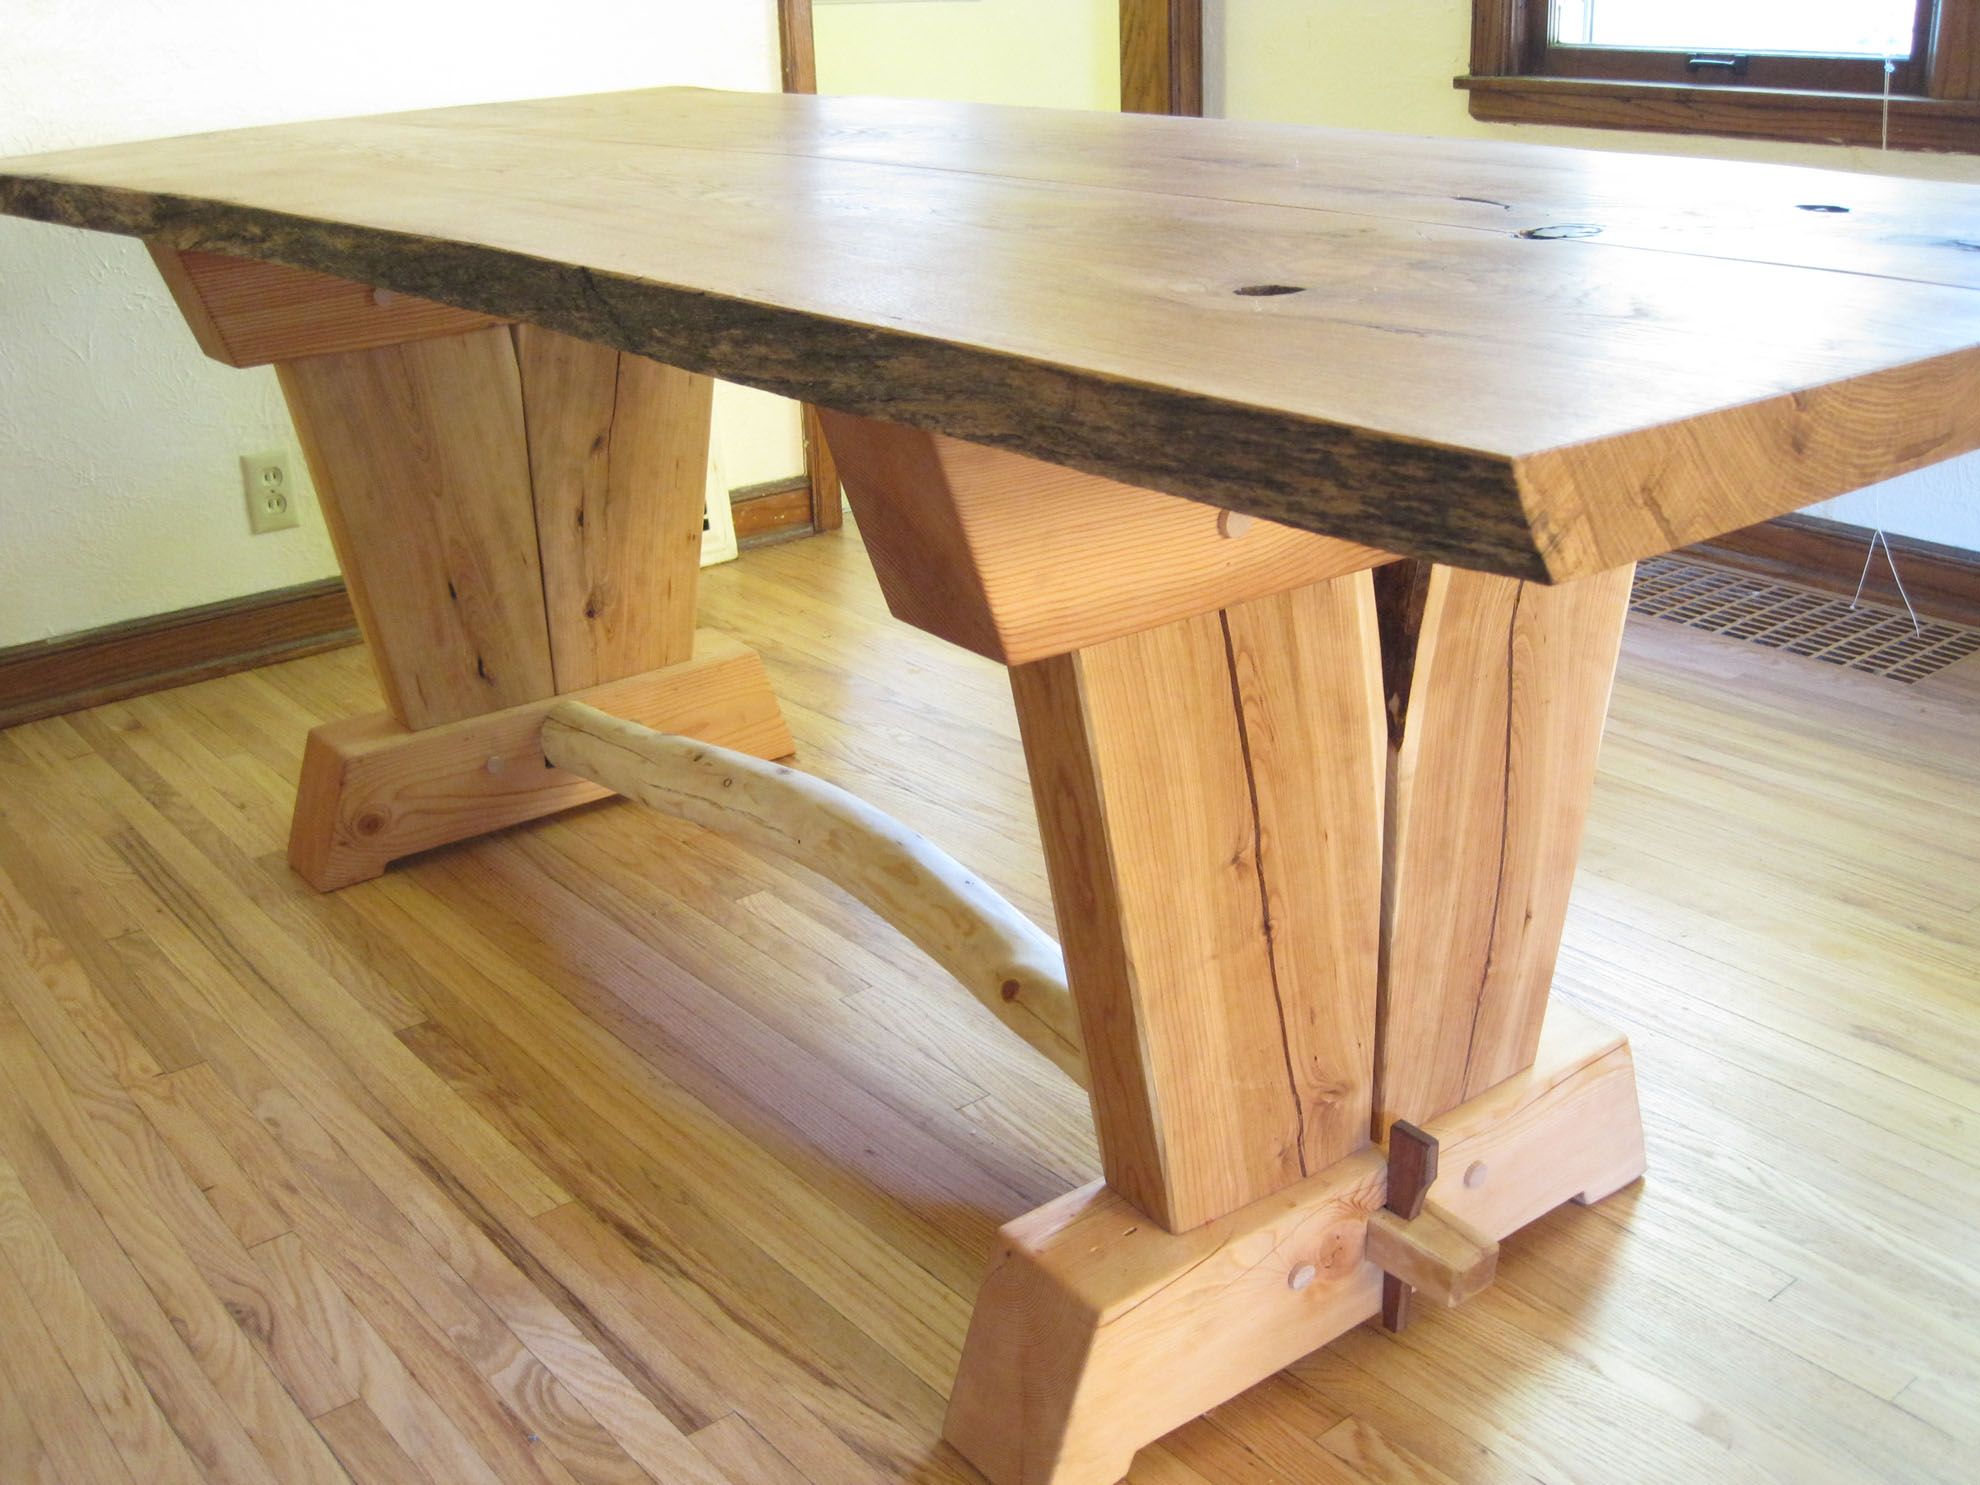 Угловой деревянный стол своими руками